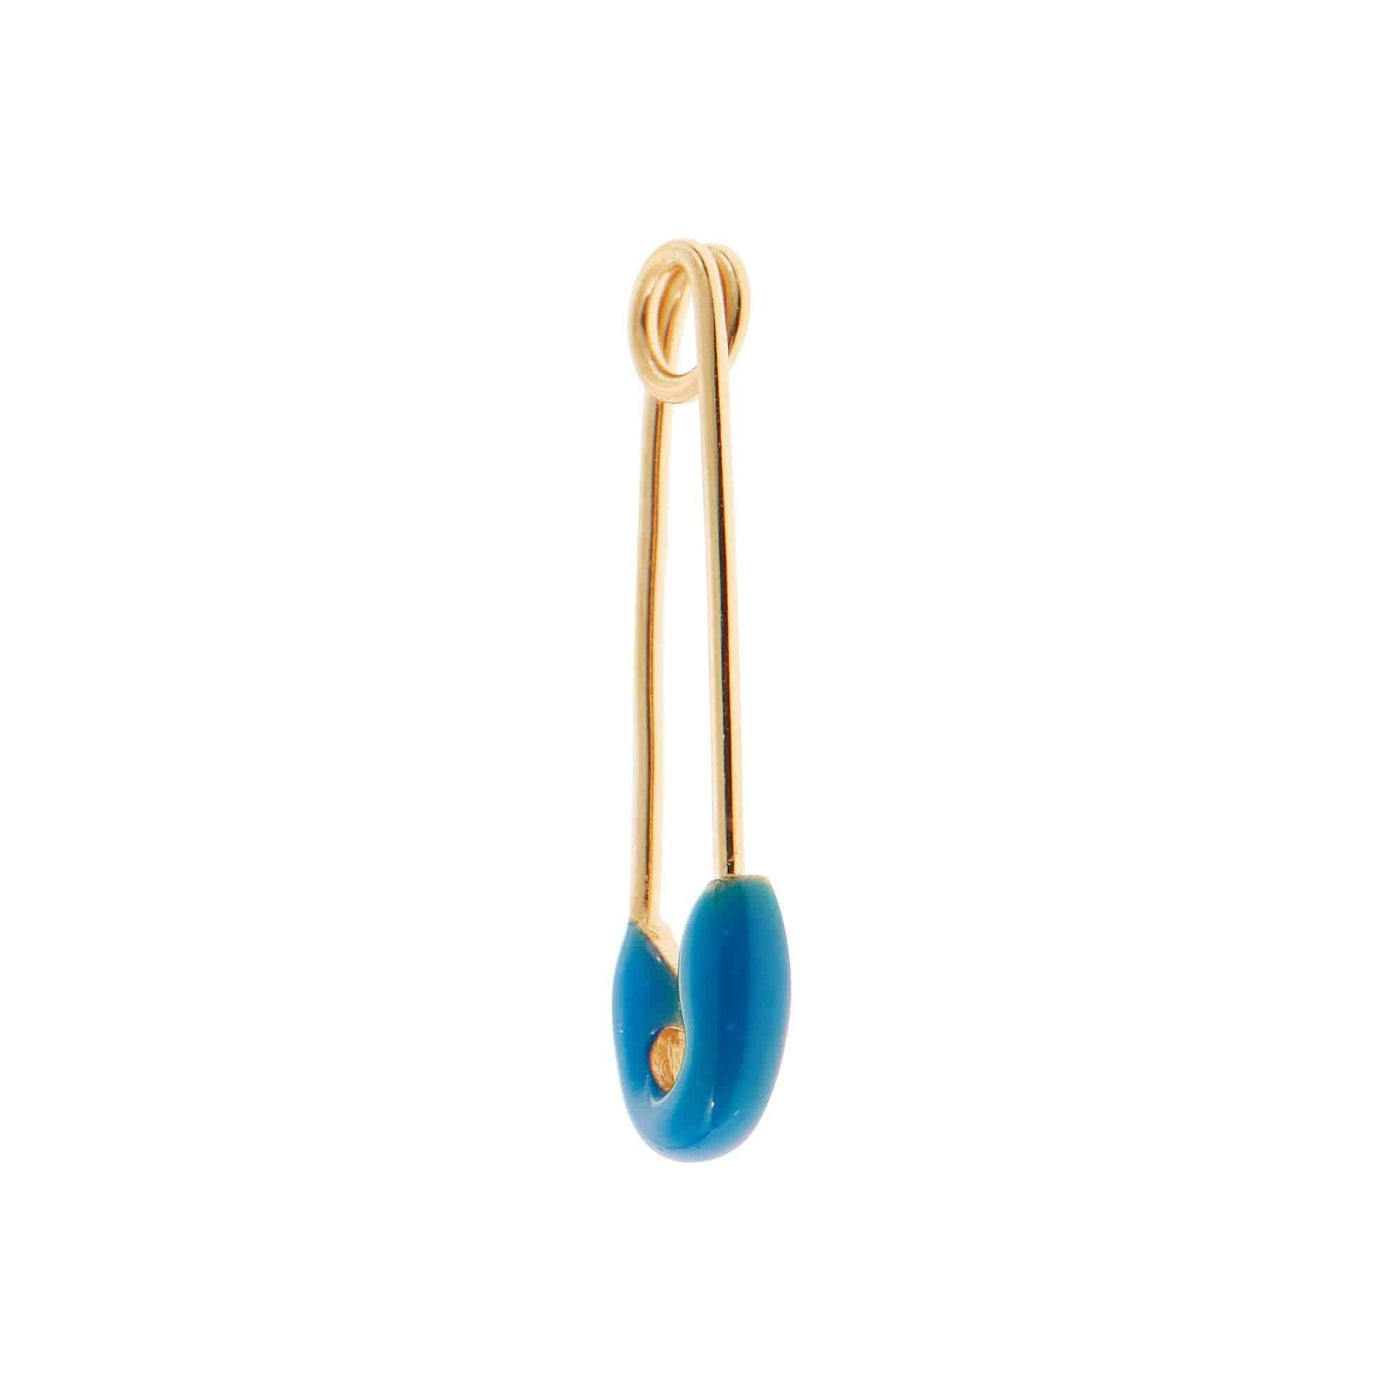 Neon Blue Enamel Safety Pin Earring - Eye M by Ileana Makri